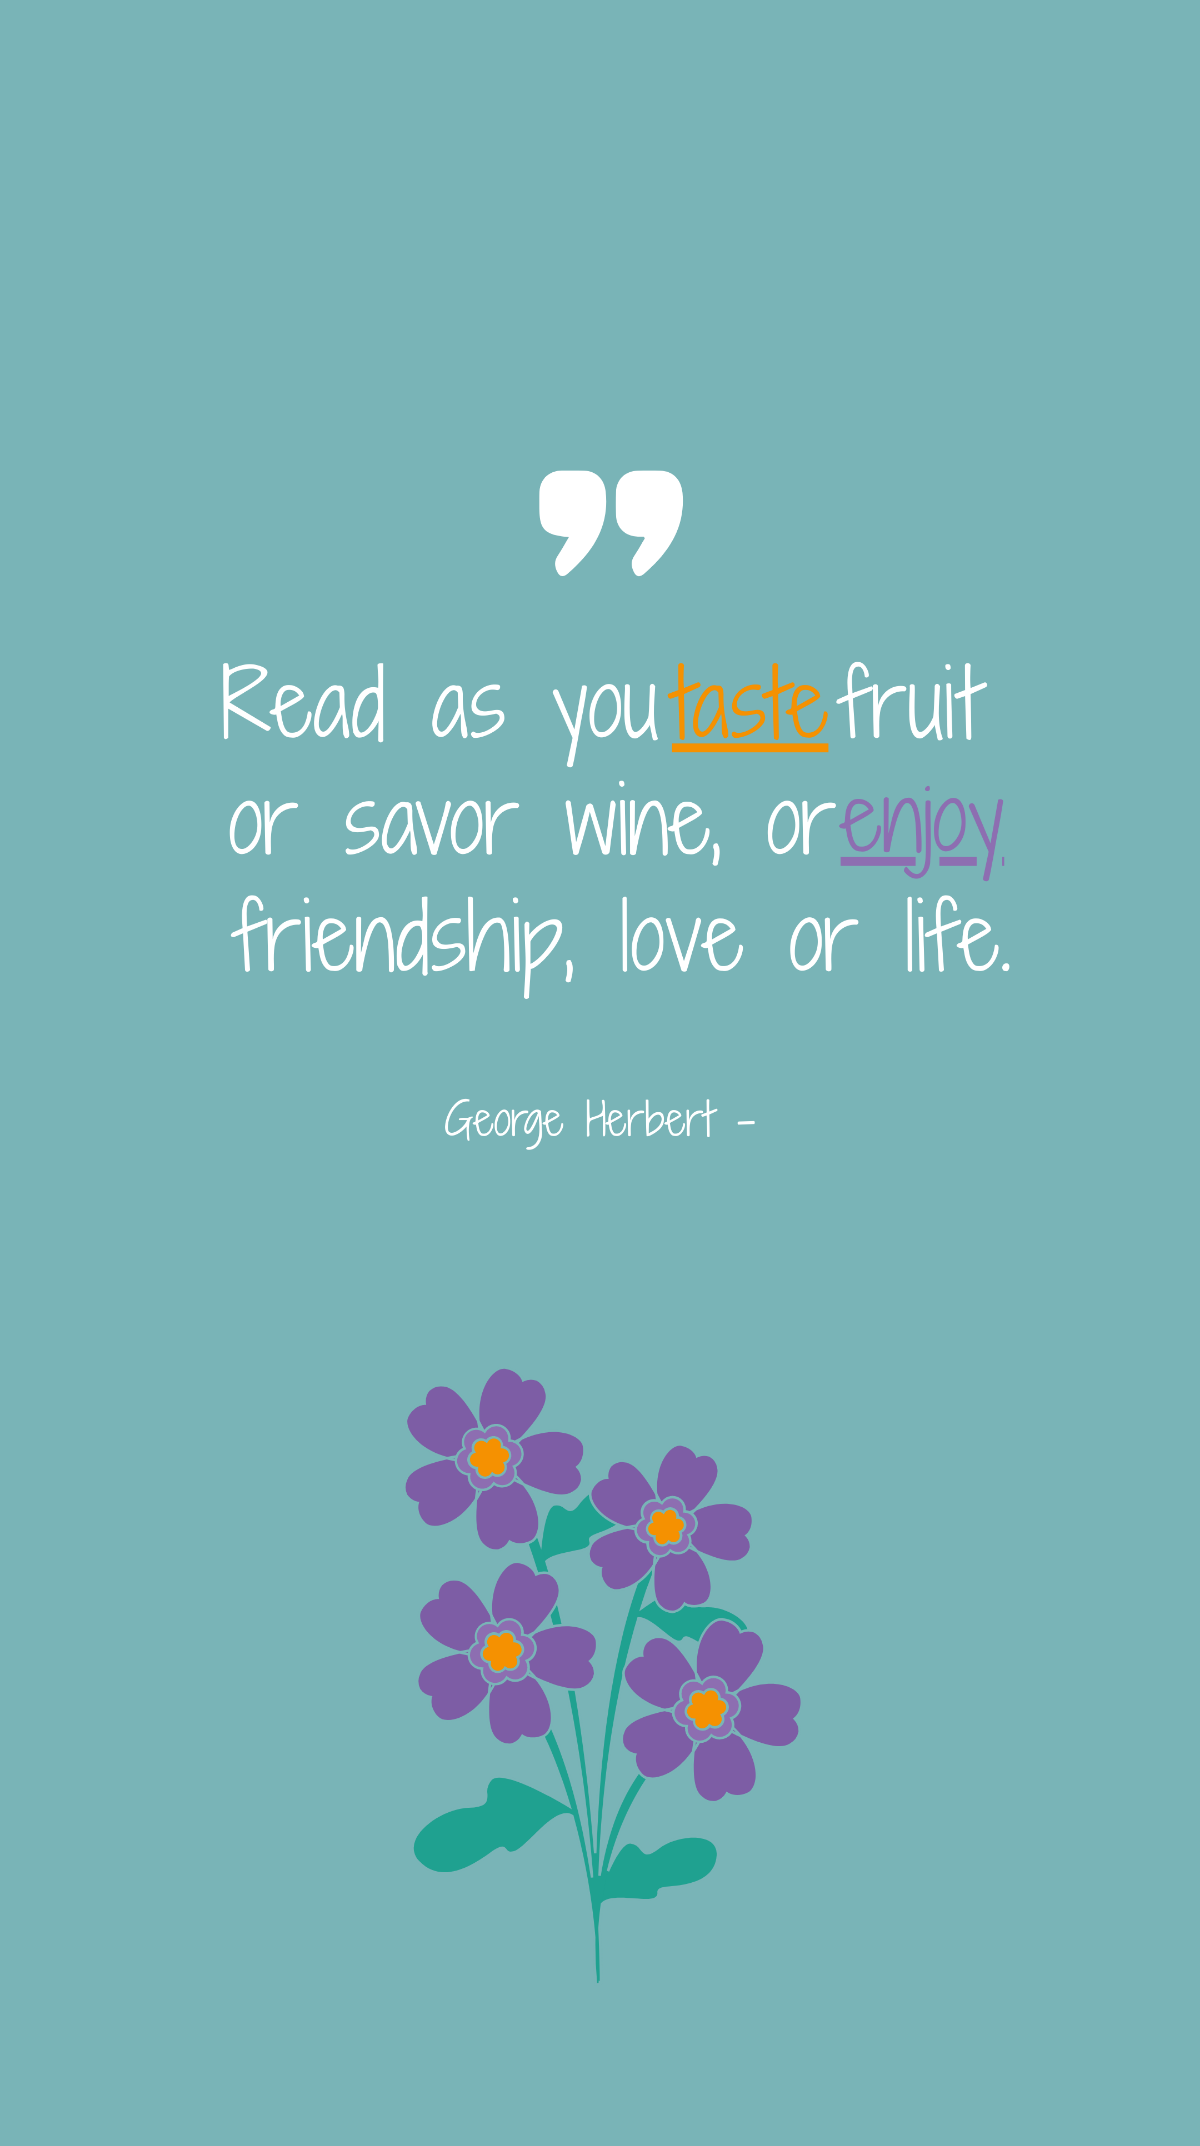 George Herbert - Read as you taste fruit or savor wine, or enjoy friendship, love or life. Template